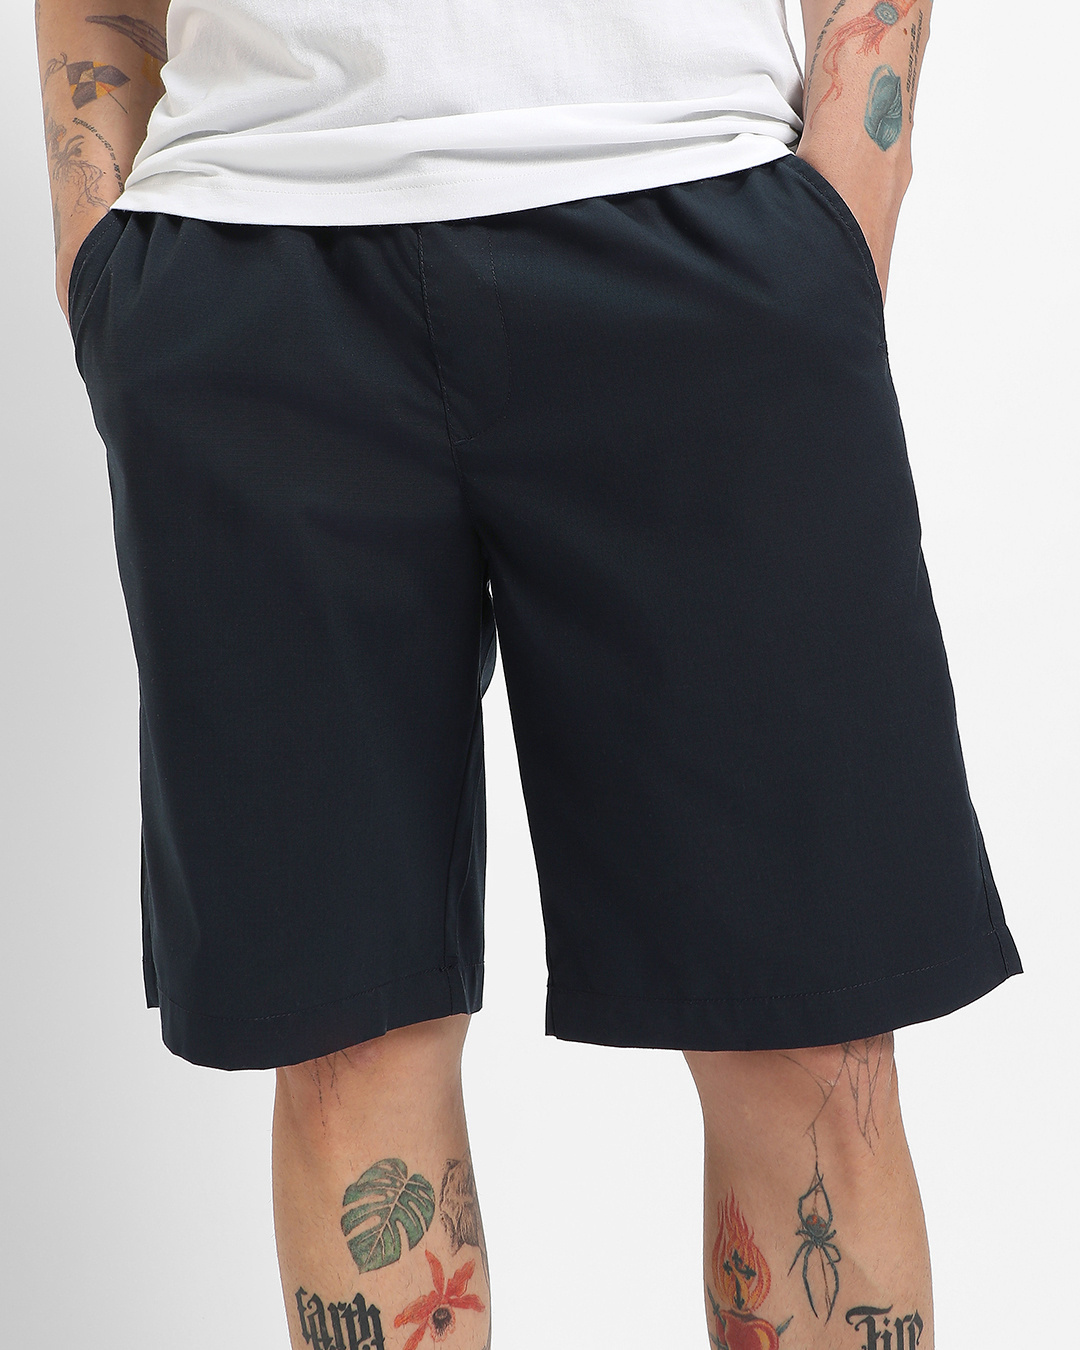 Buy Men's Navy Blue Shorts Online at Bewakoof